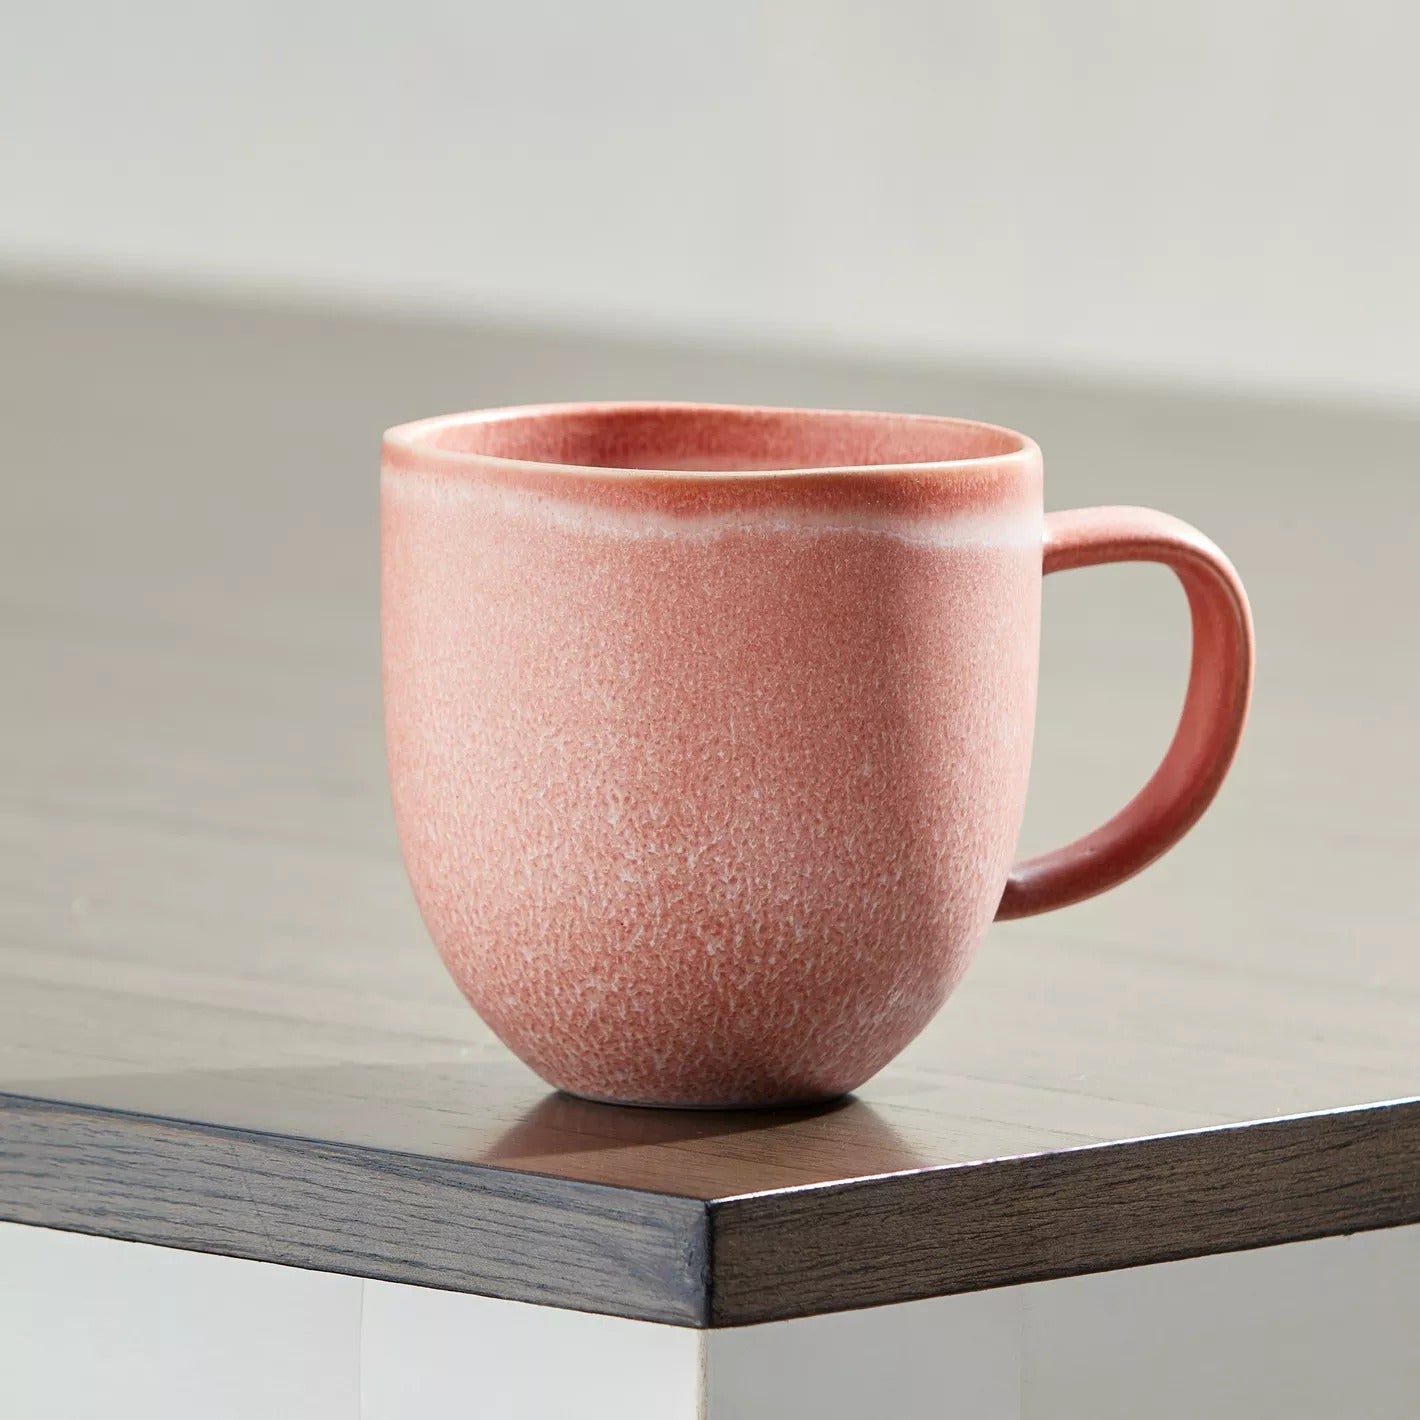 354ml Tea/Coffee Mug - Brown